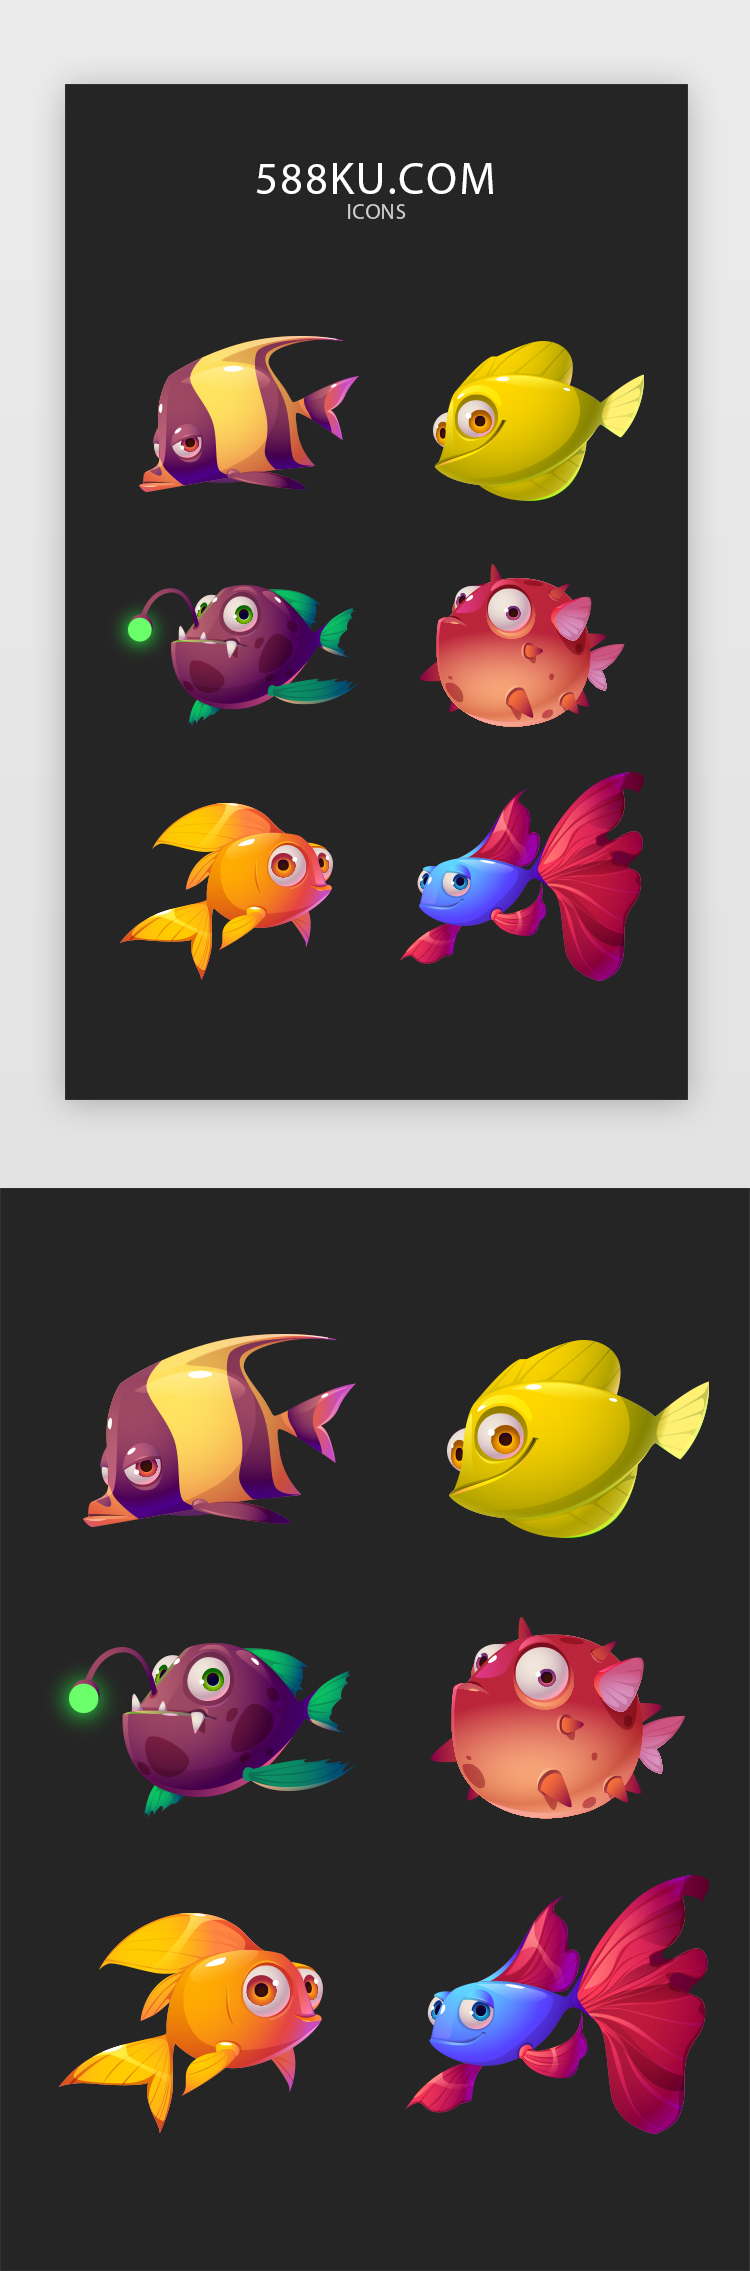 捕鱼类小游戏图标icon图片